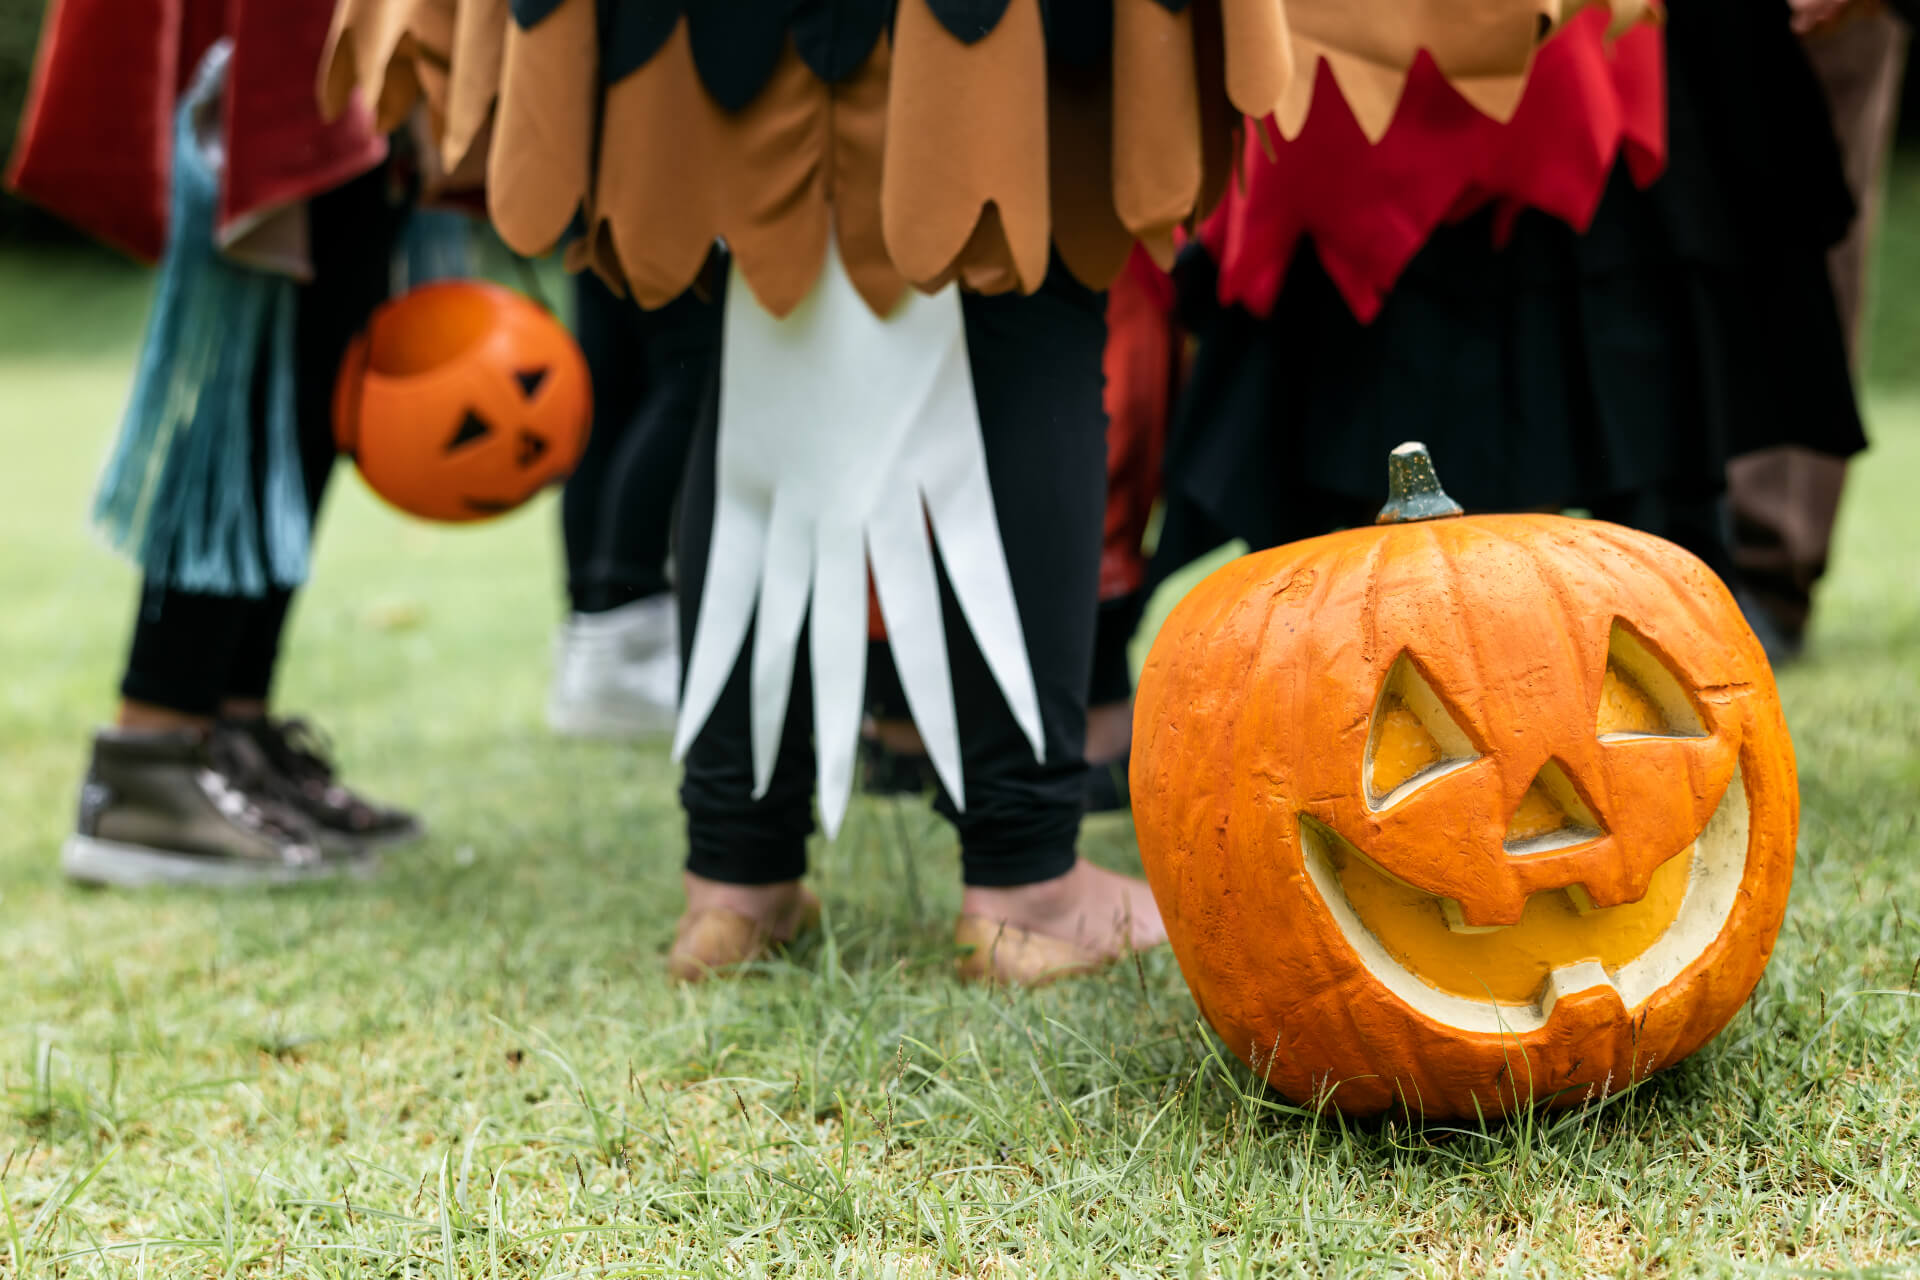 Entfessle die Magie an diesem Halloween mit Aktivitäten, die für Kinder jeden Alters gruselig, unterhaltsam und herausfordernd sind.